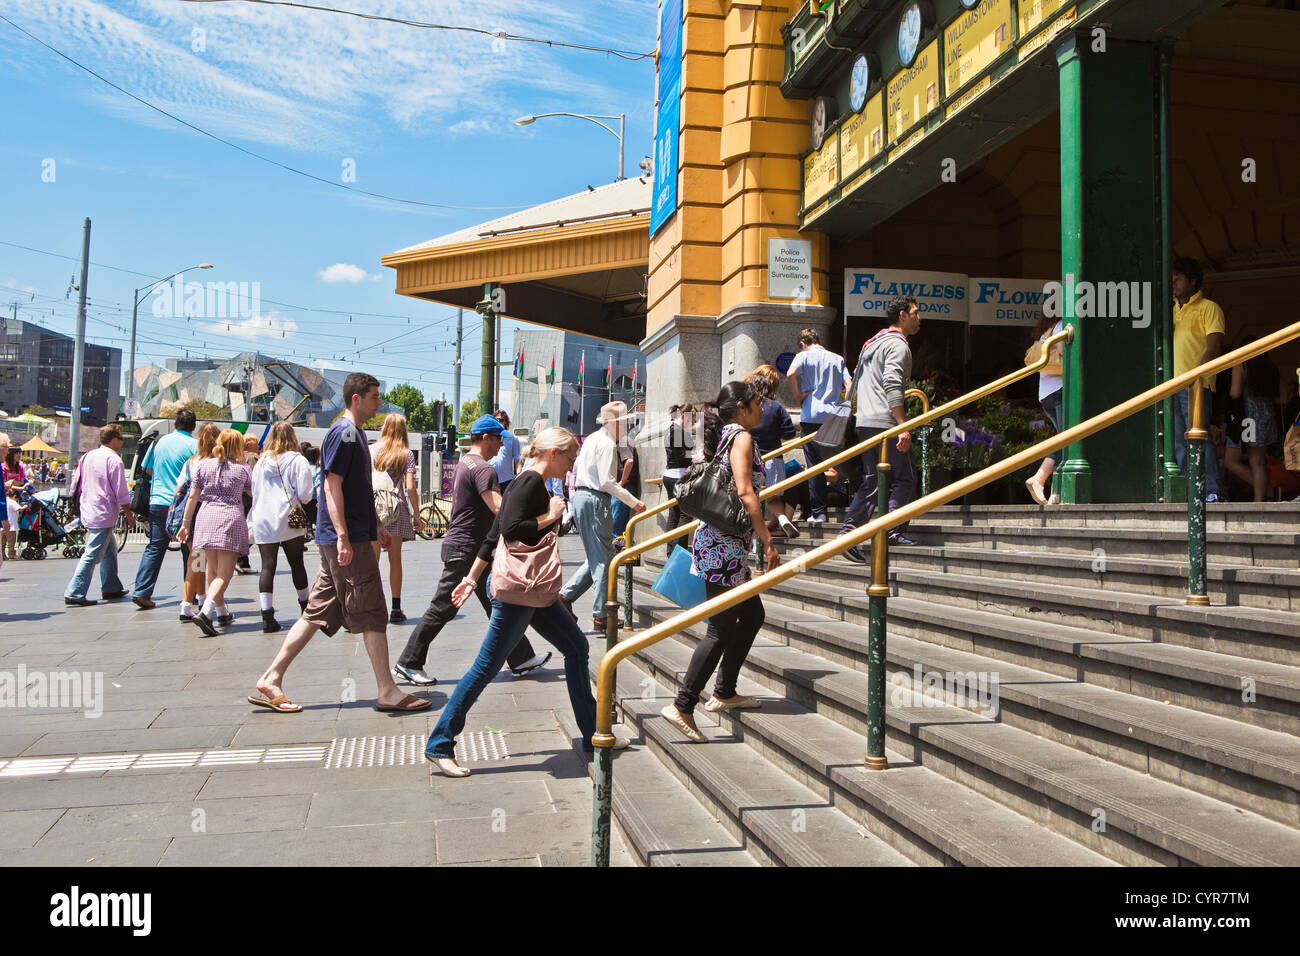 La célèbre gare de Flinders Street sur Swanston Street Melbourne Victoria Australia avec des foules de gens dans les rues. Banque D'Images